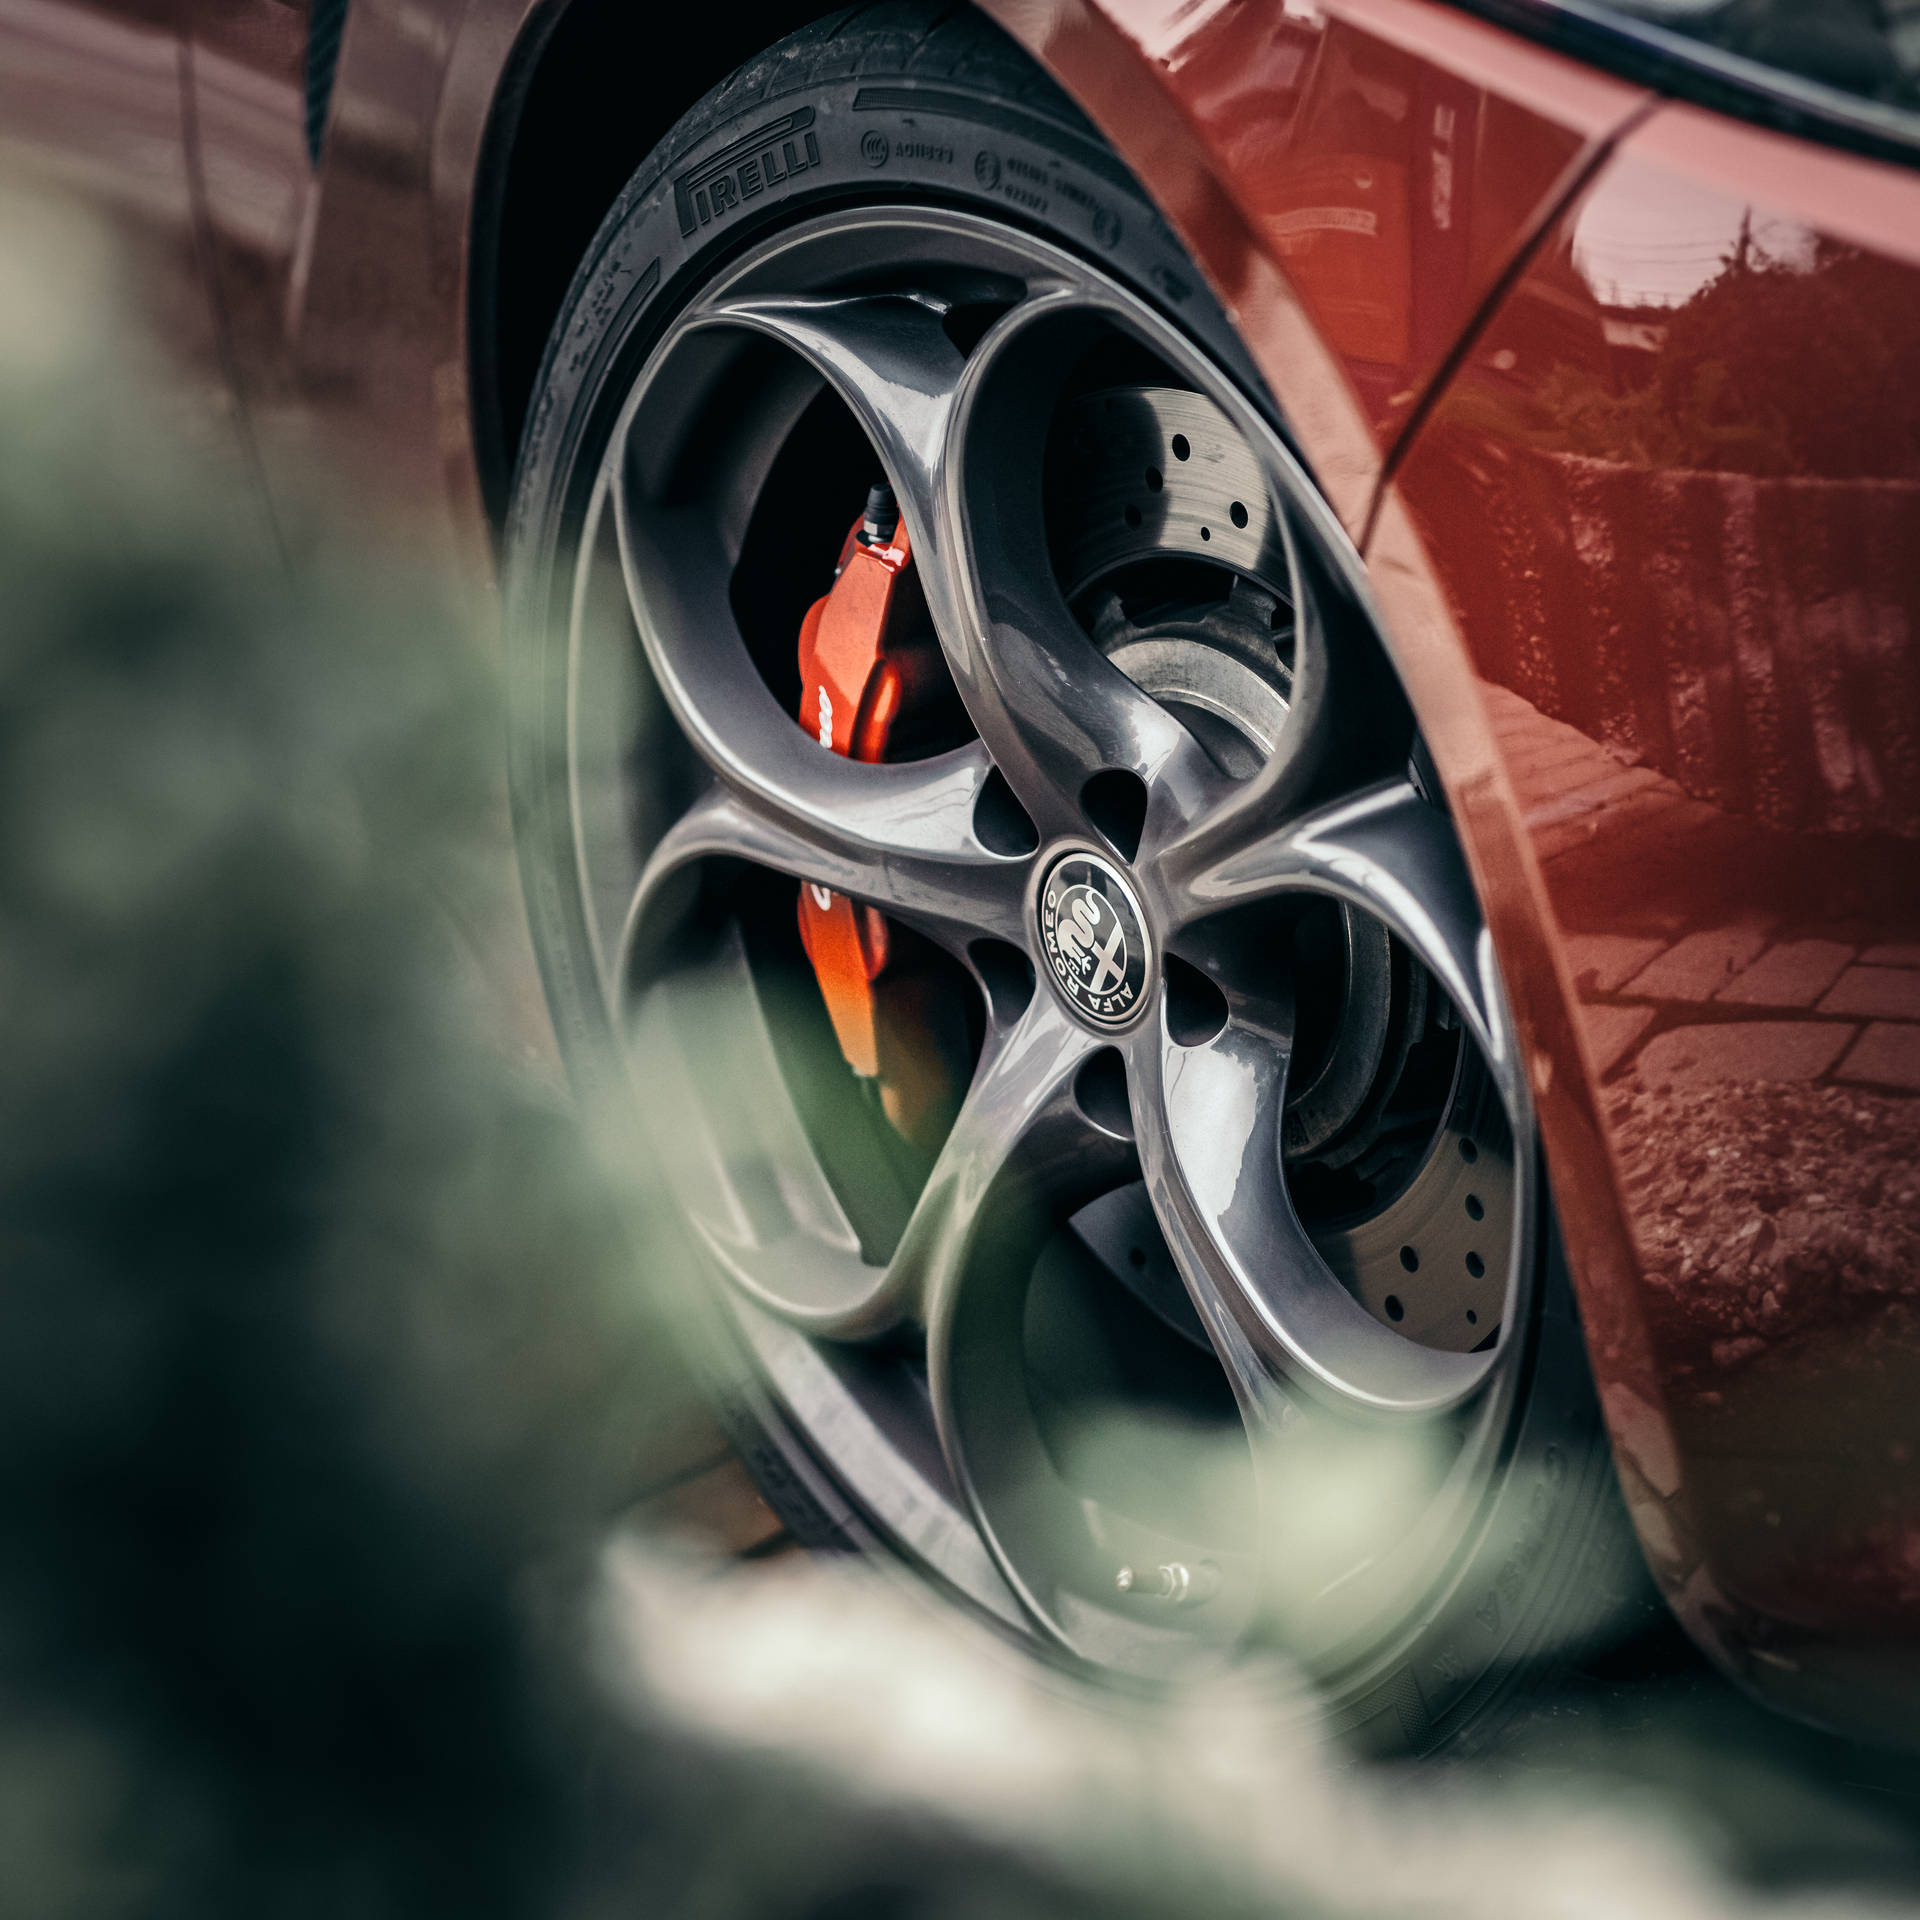 Alfa Romeo Giulia car wheel metal rim selective focus photo wallpaper.